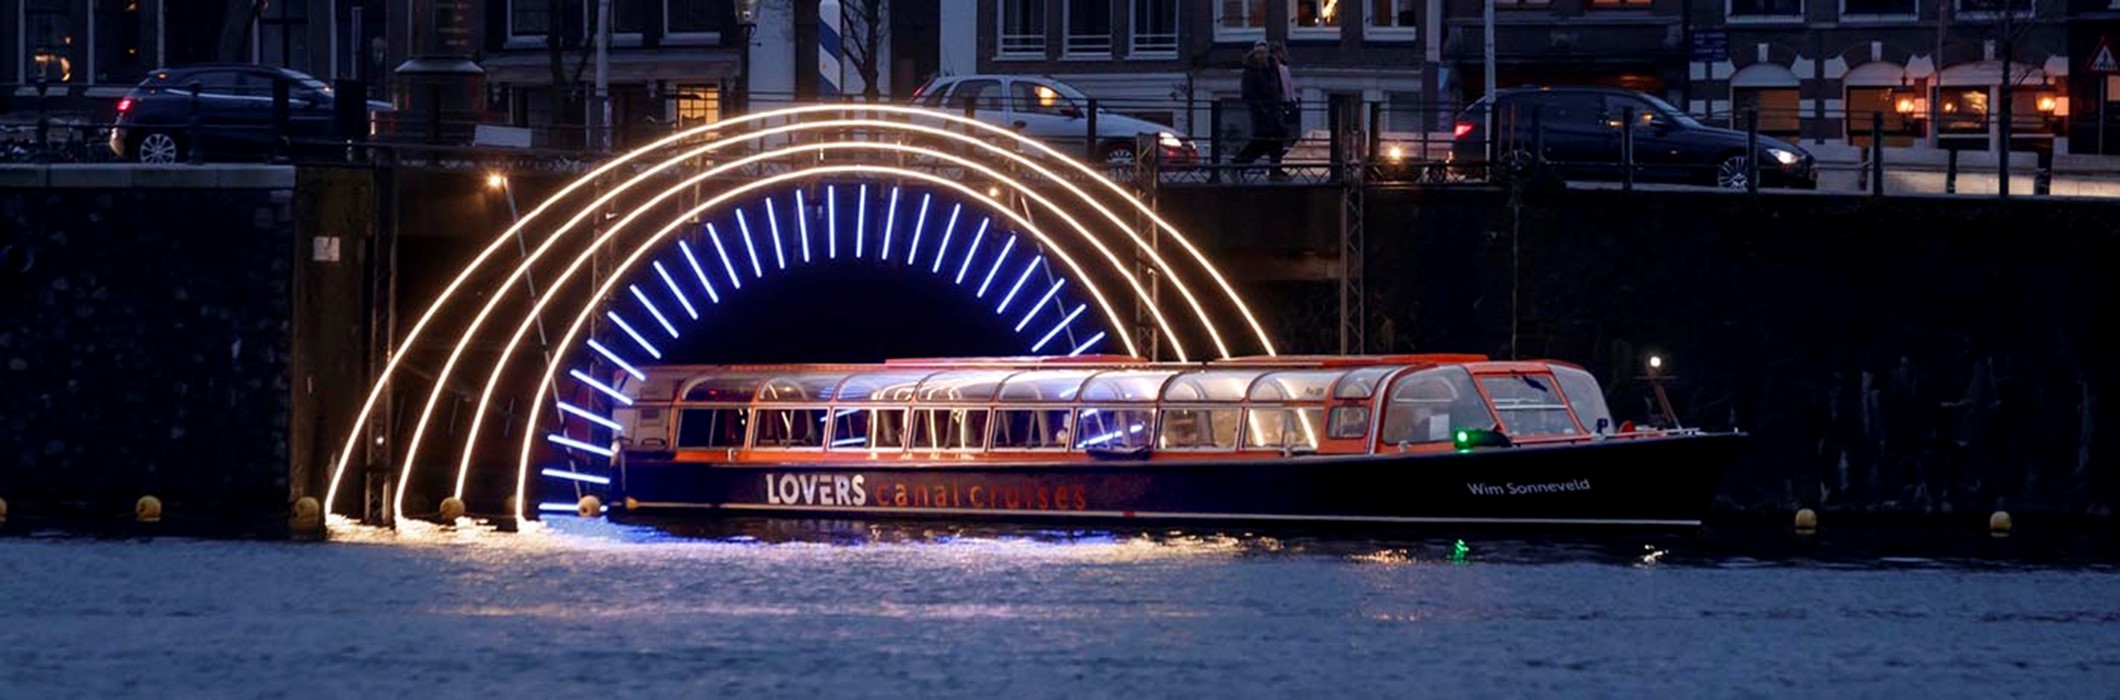 Amsterdam Light Festival Cruise du restaurant Loetje